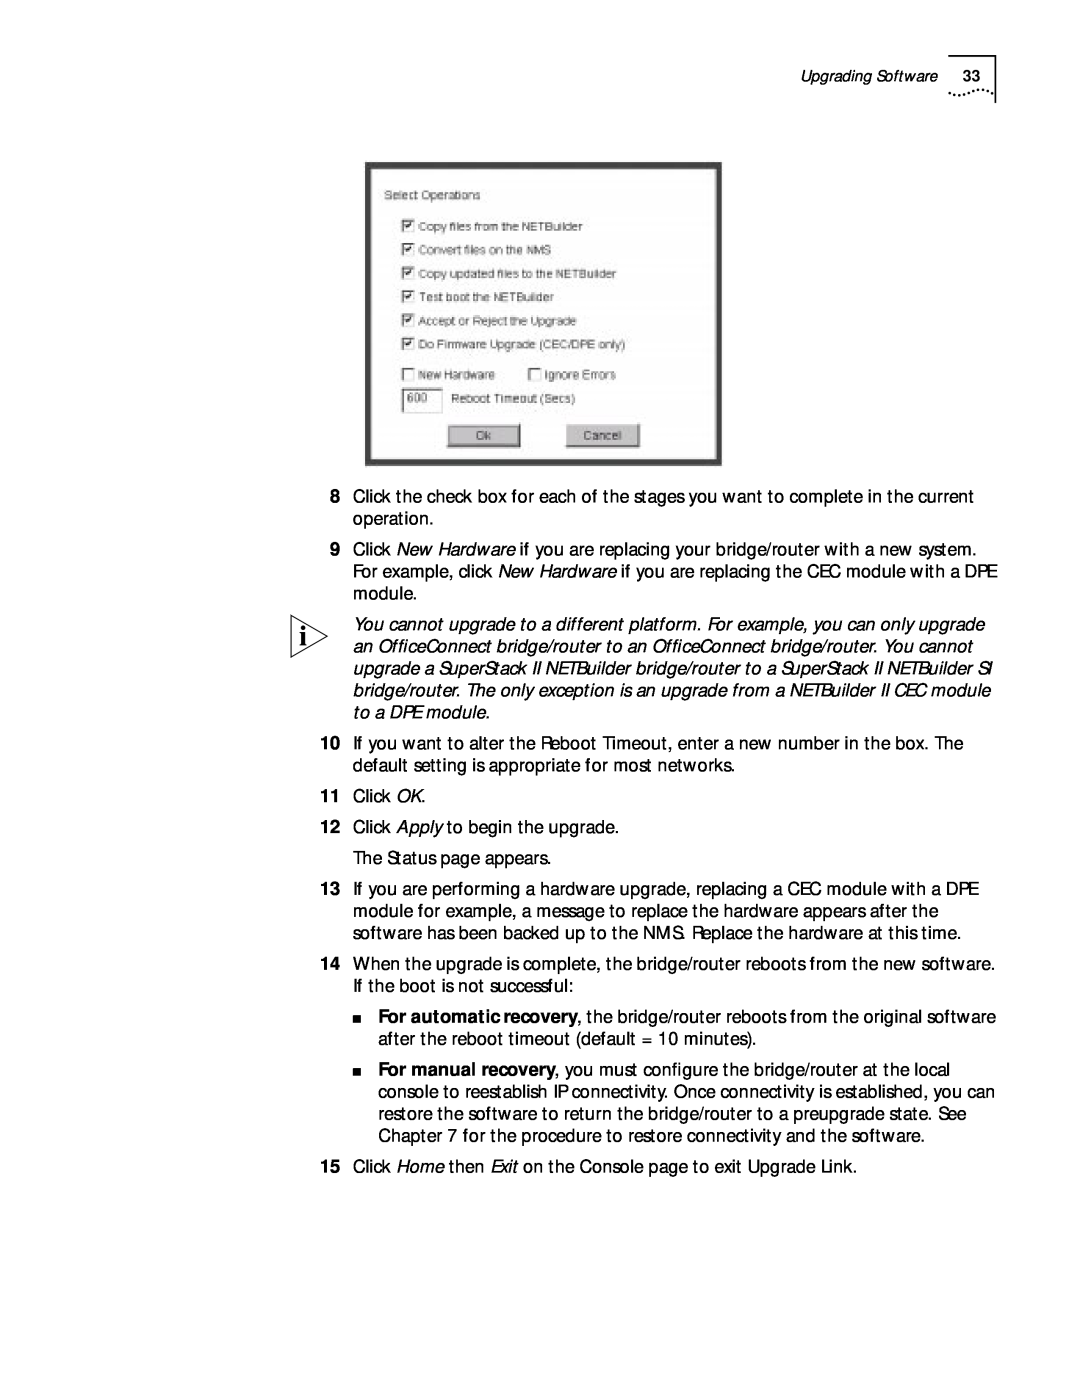 3Com ENTERPRISE OS 11.3 manual Click OK 